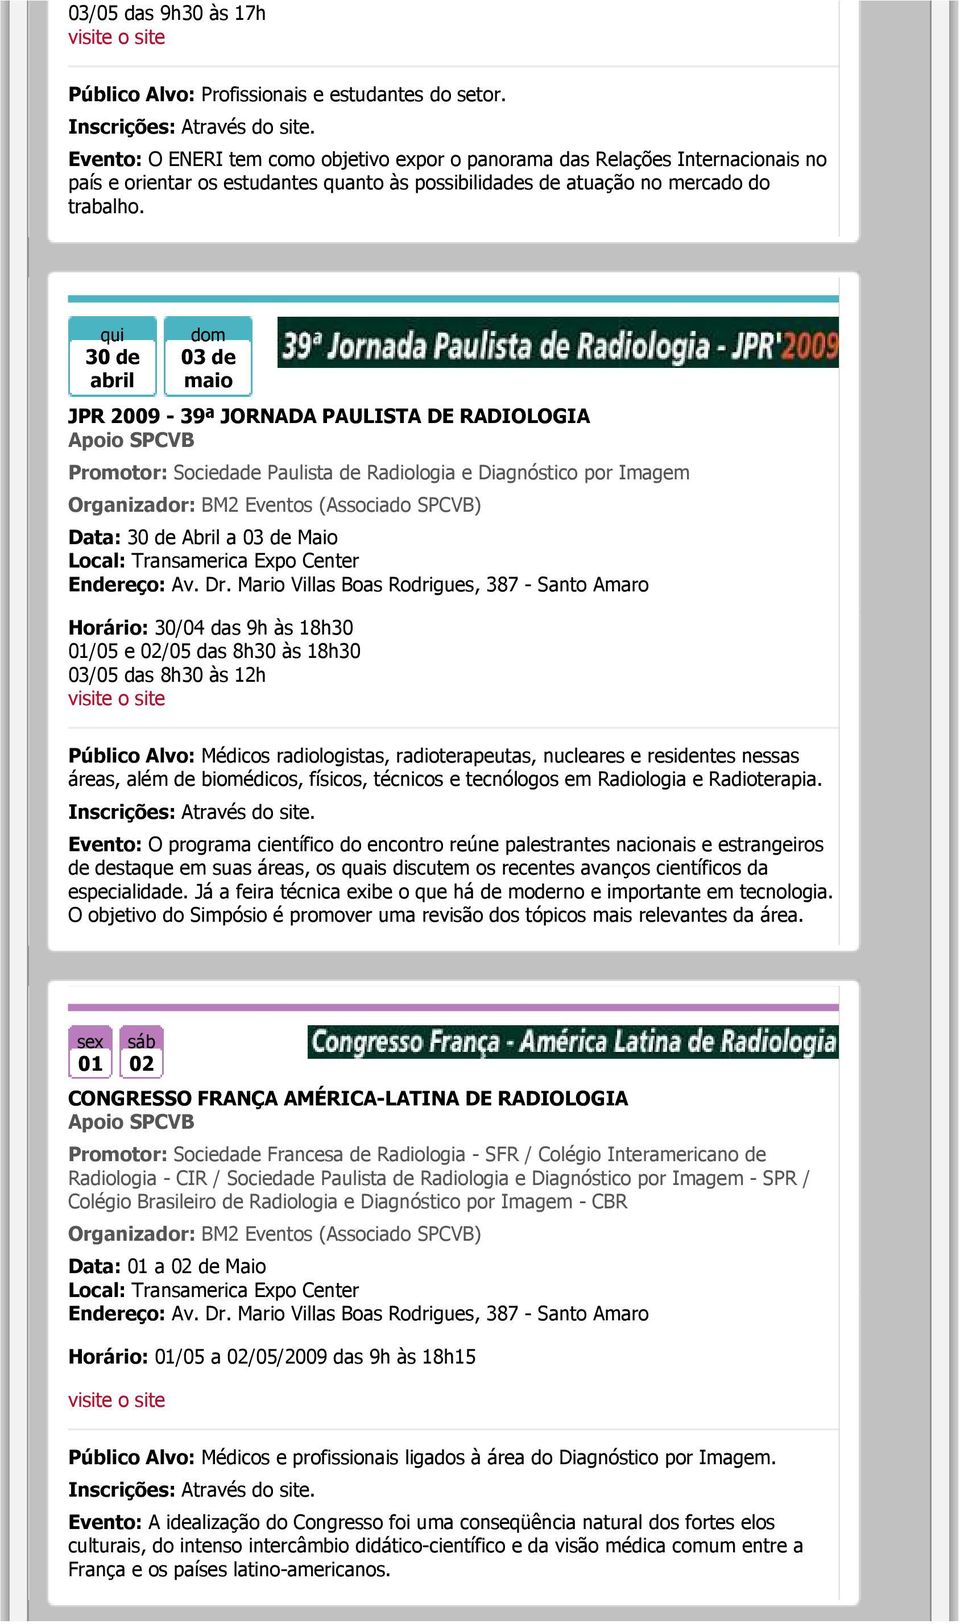 30 de abril dom 03 de maio JPR 2009-39ª JORNADA PAULISTA DE RADIOLOGIA Promotor: Sociedade Paulista de Radiologia e Diagnóstico por Imagem Organizador: BM2 Eventos (Associado SPCVB) Data: 30 de Abril